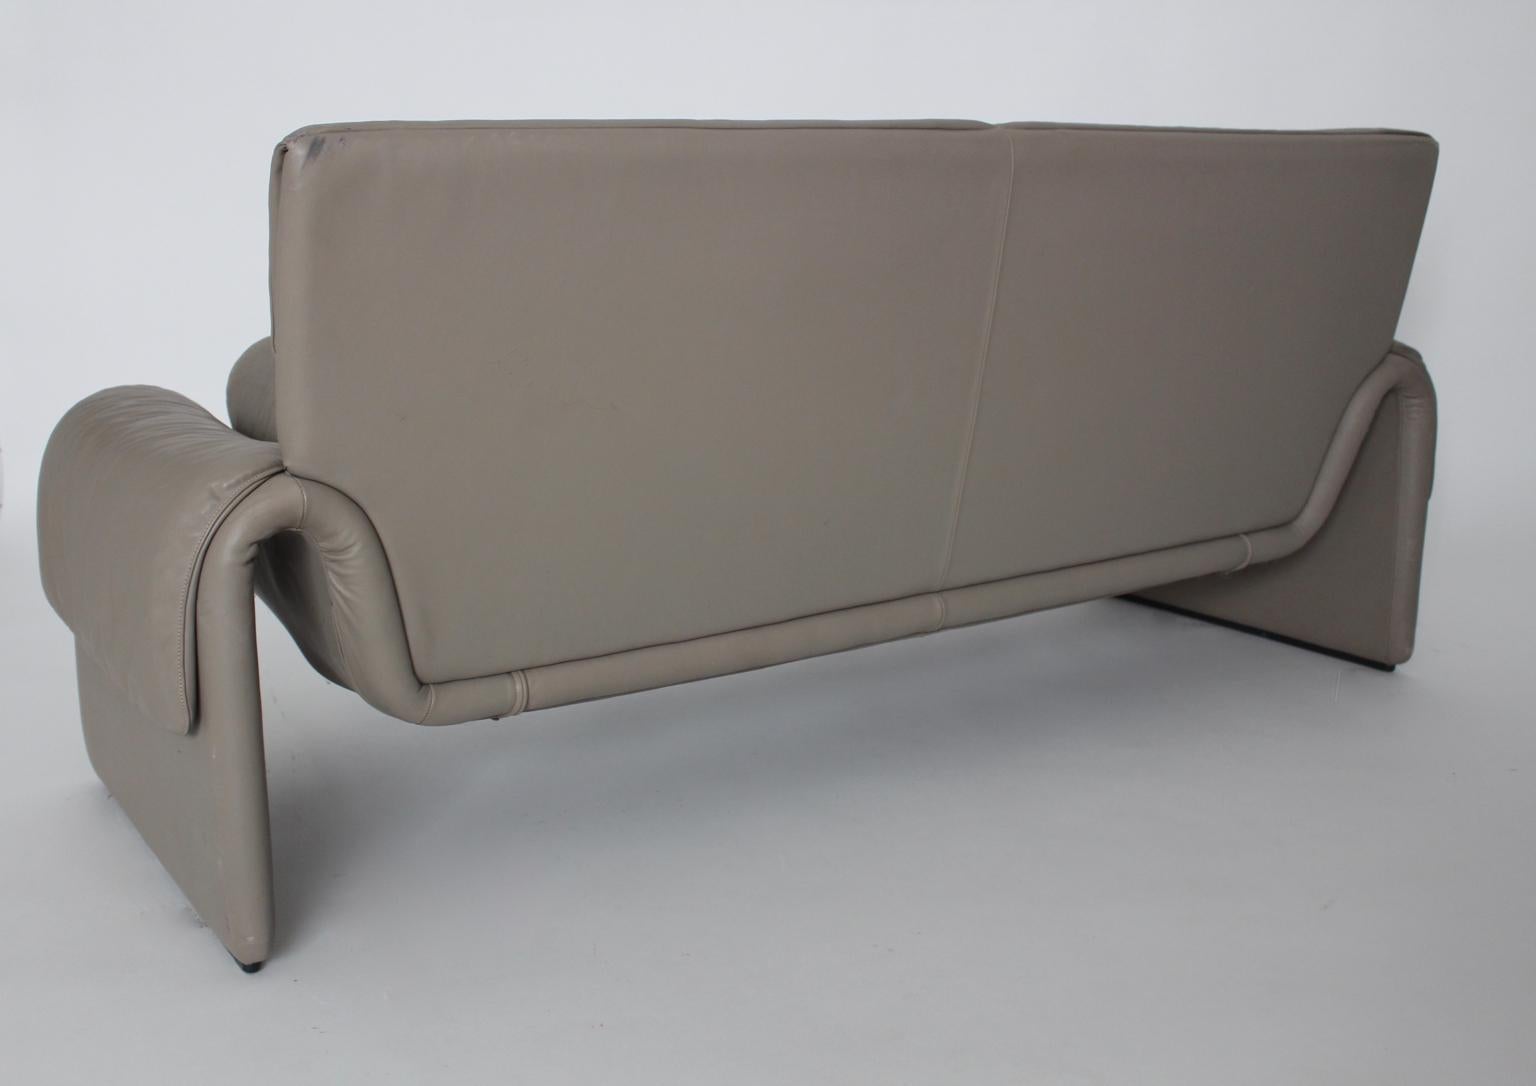 Modernist Vintage Grey Leather Bench Loveseat De Sede 1980s Switzerland For Sale 1